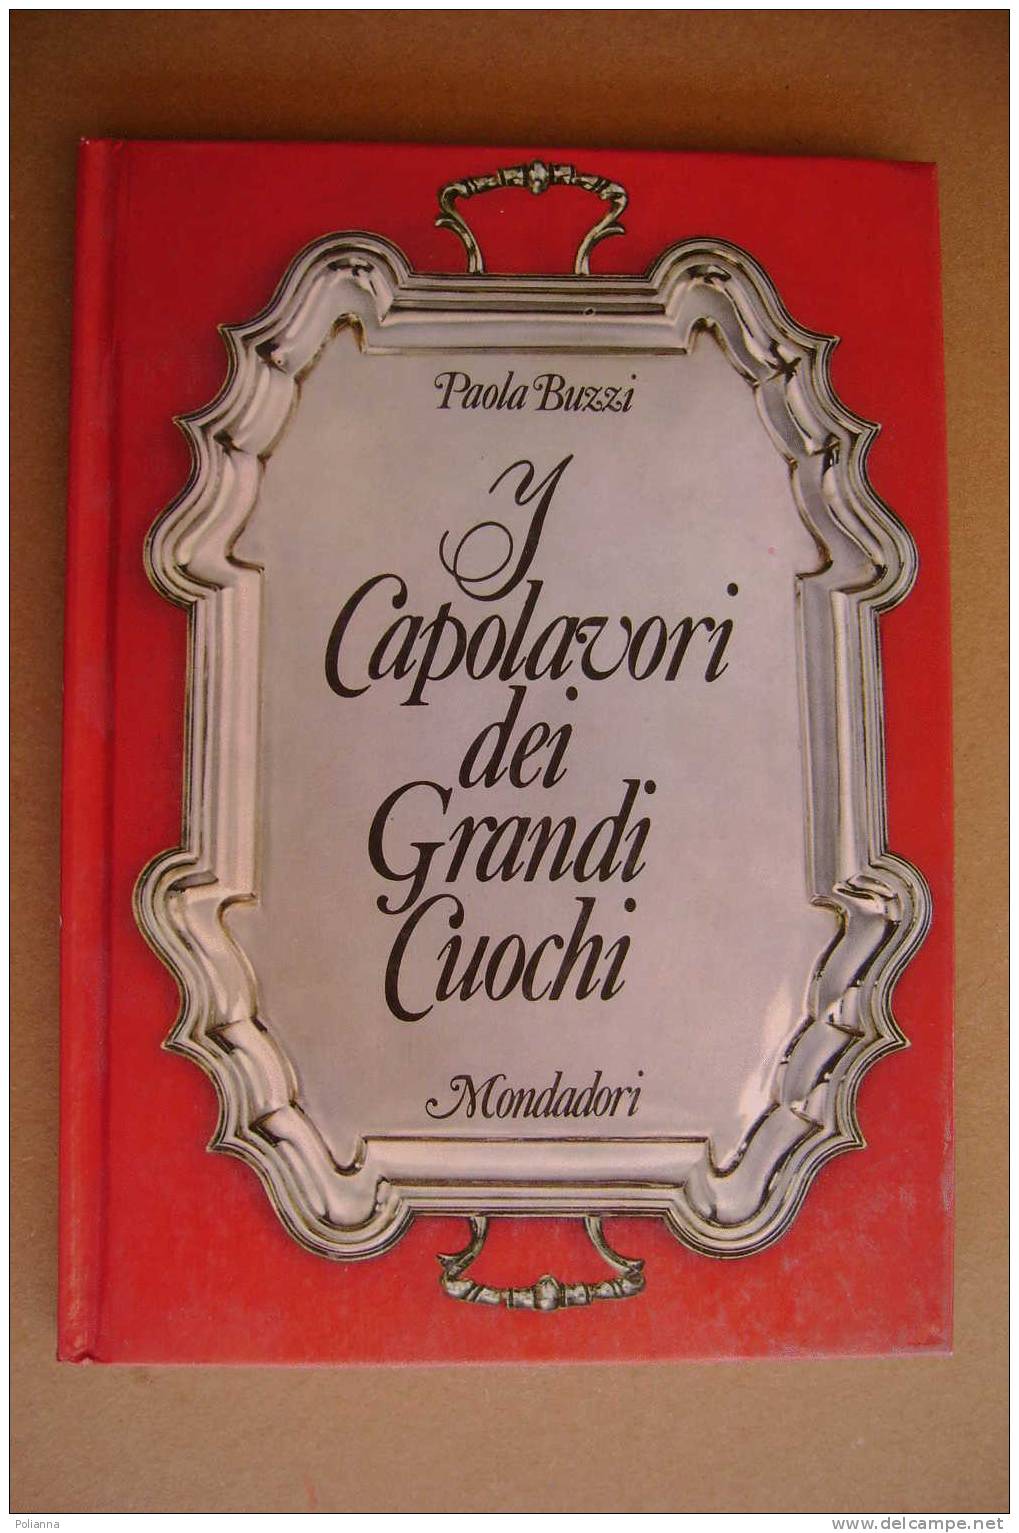 PAM/11 Paola Buzzi CAPOLAVORI DEI GRANDI CUOCHI Mondadori 1971/GASTRONOMIA/CUCINA - House & Kitchen